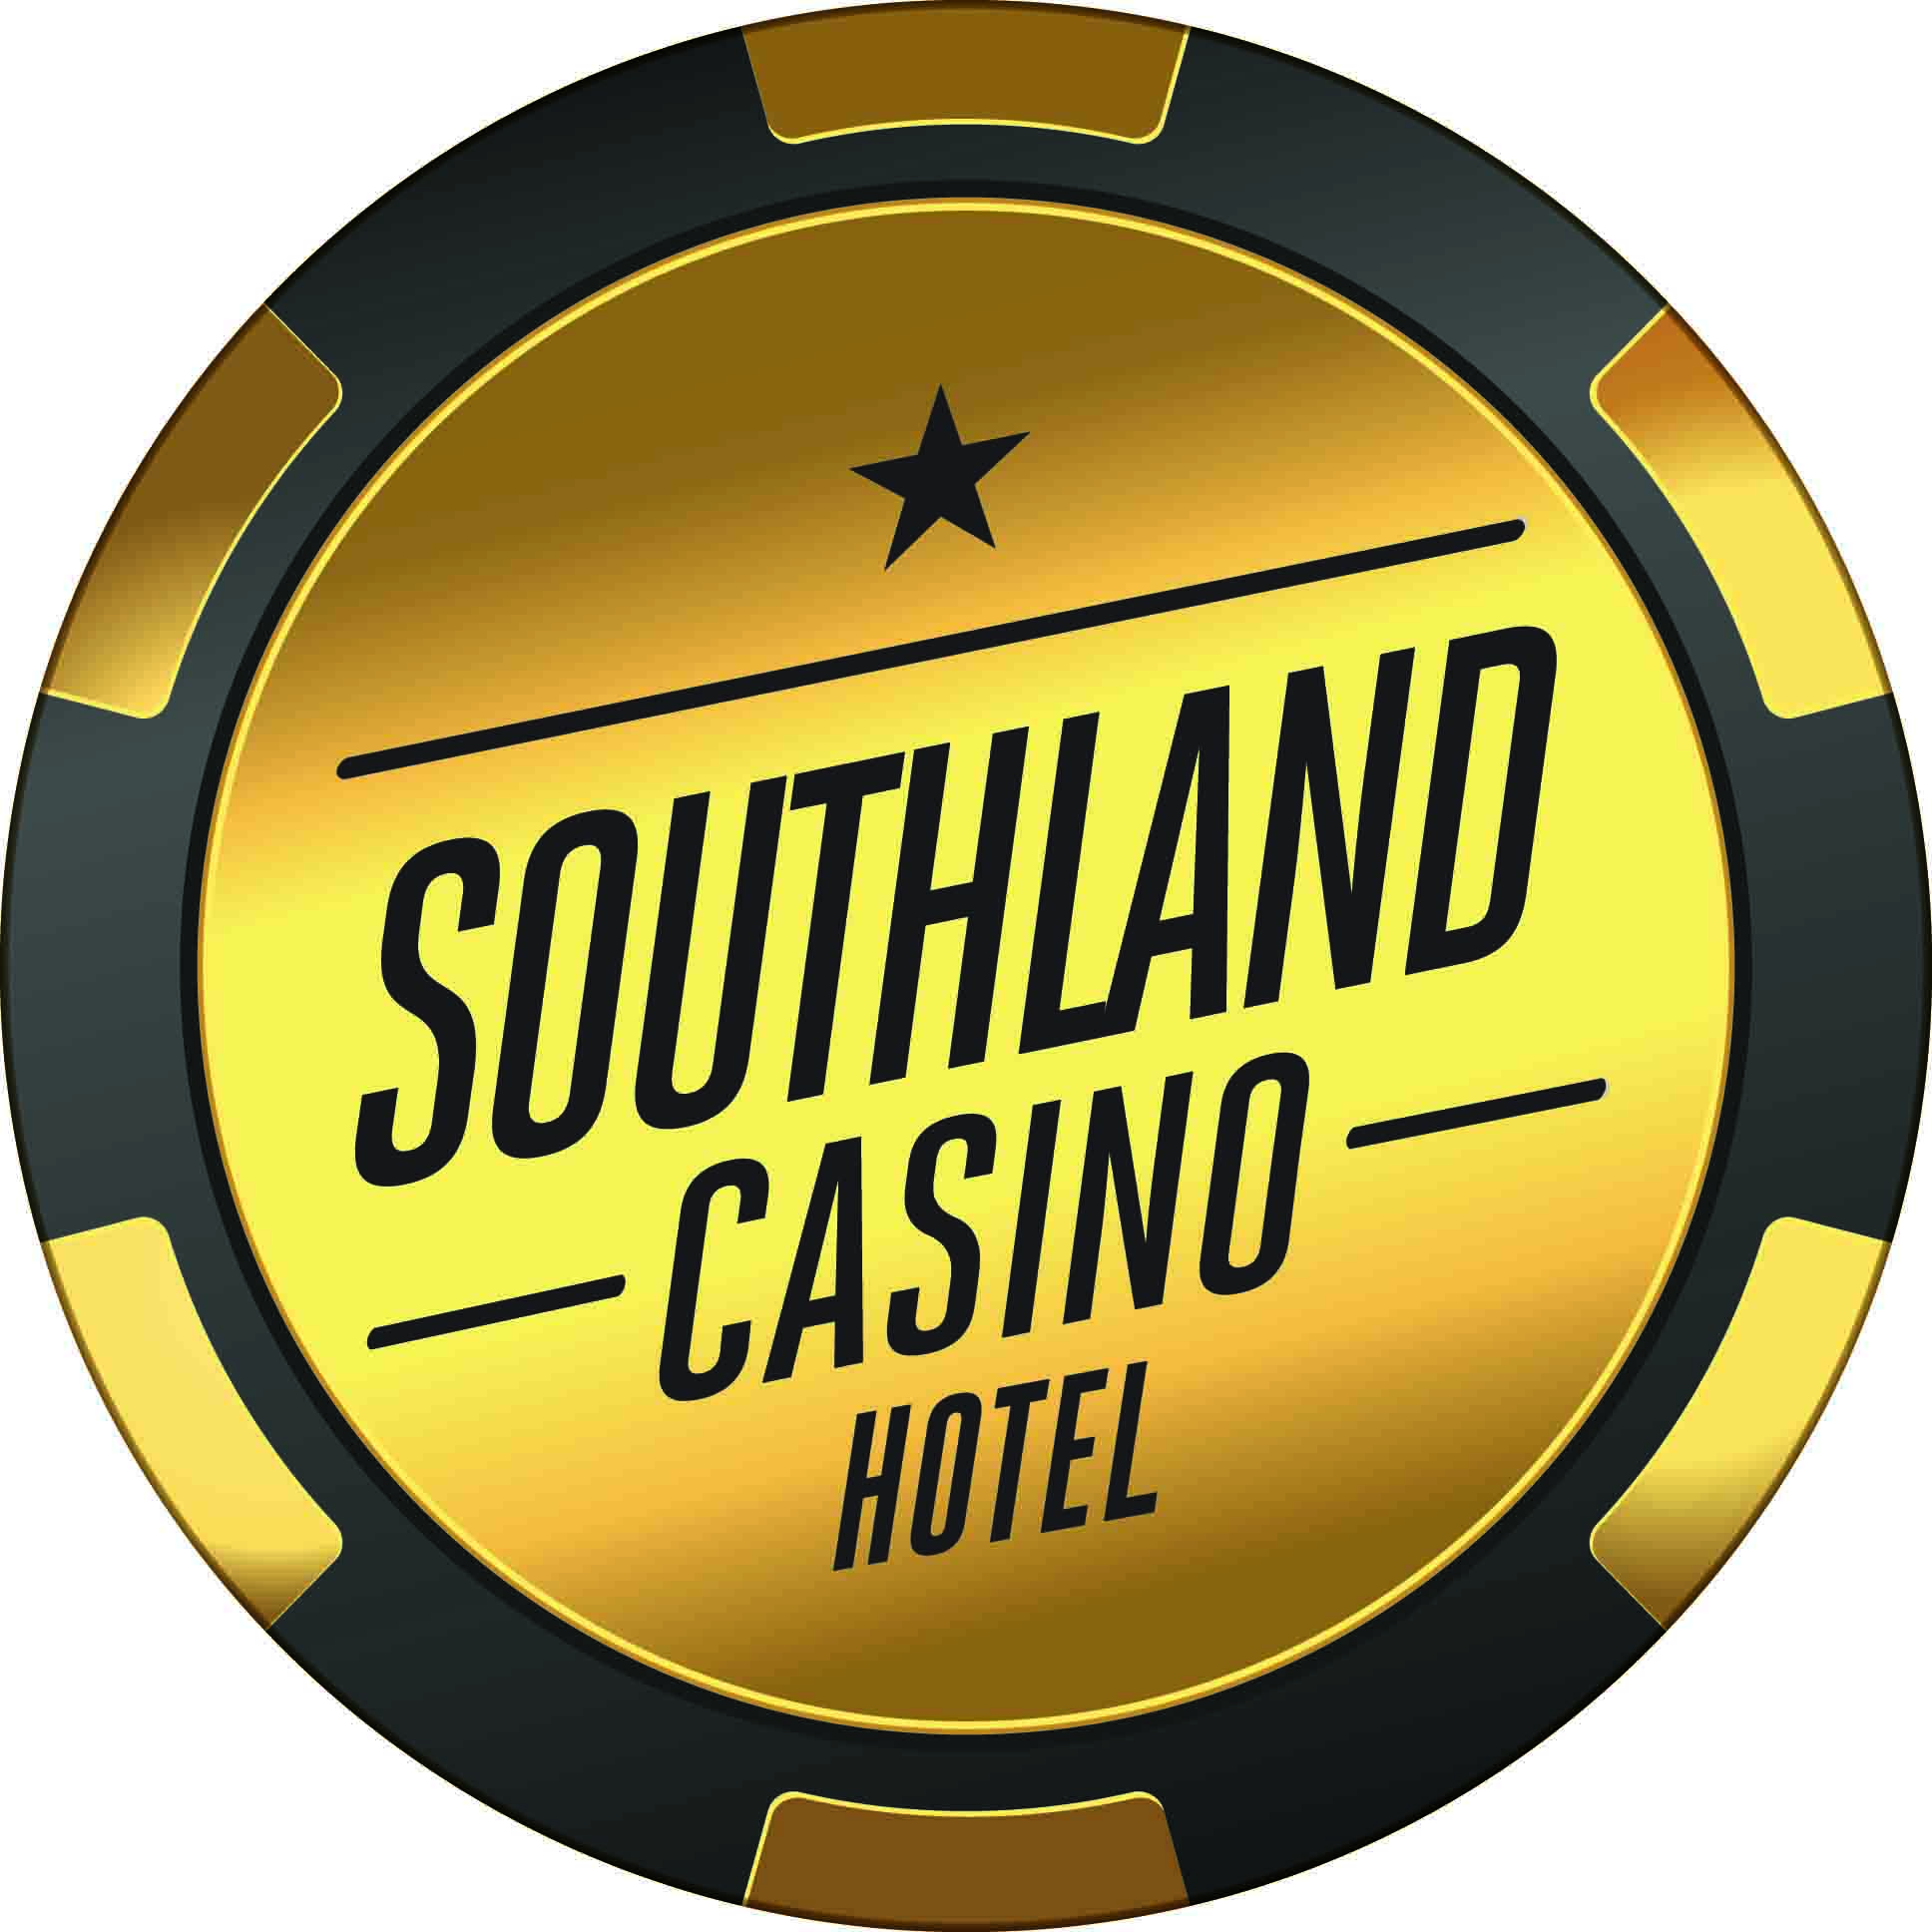 Southland Casino Hotel Vector no bevel copy